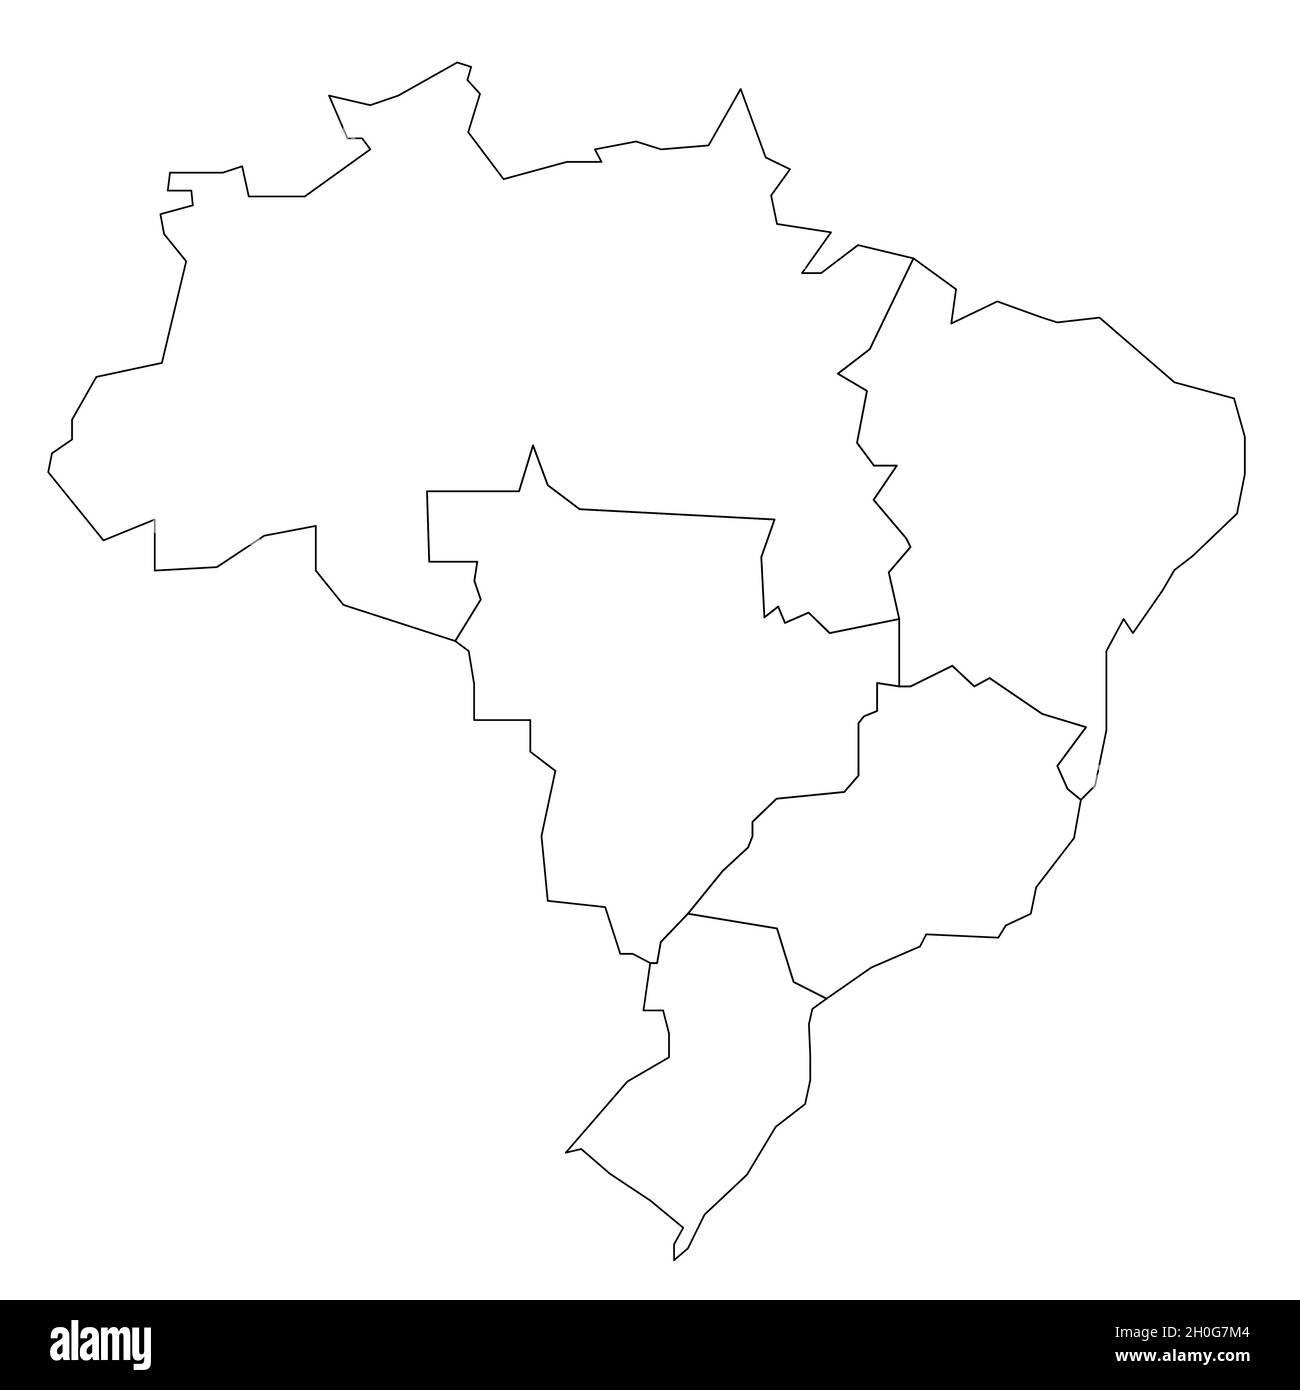 Schwarze Umrisse der politischen Landkarte von Brasilien. Staaten teilen sich nach Farbe in 5 Regionen auf. Einfache leere Vektorkarte. Stock Vektor